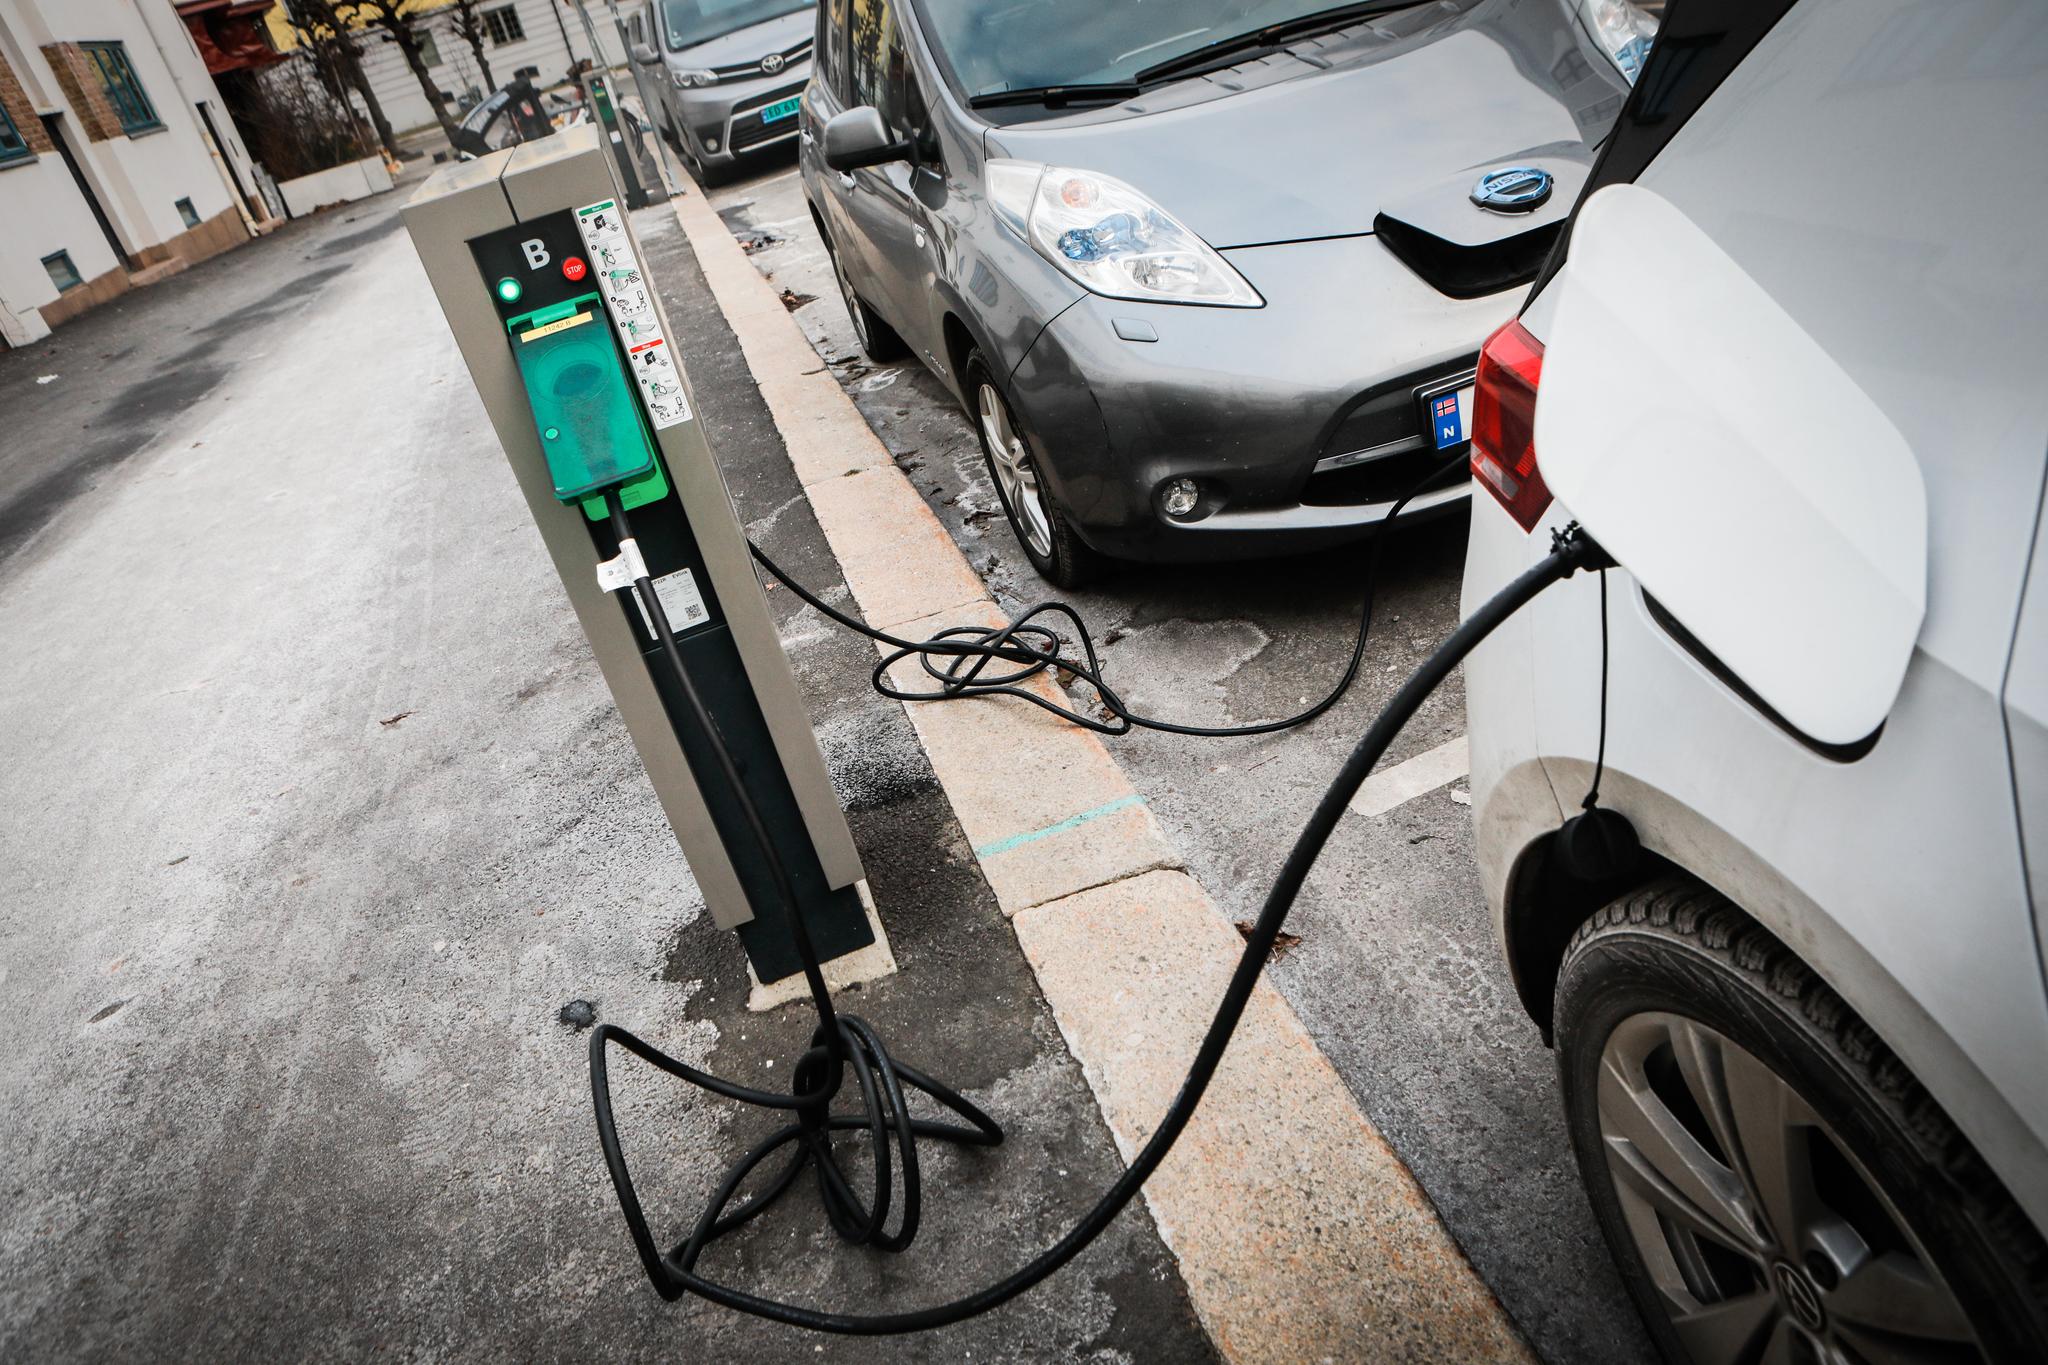 Bilister i Oslo har de siste ukene måttet betale opp mot 14 kroner pr. kilowatt-time for å lade elbil på kommunale plasser. Nå er prisene kuttet.